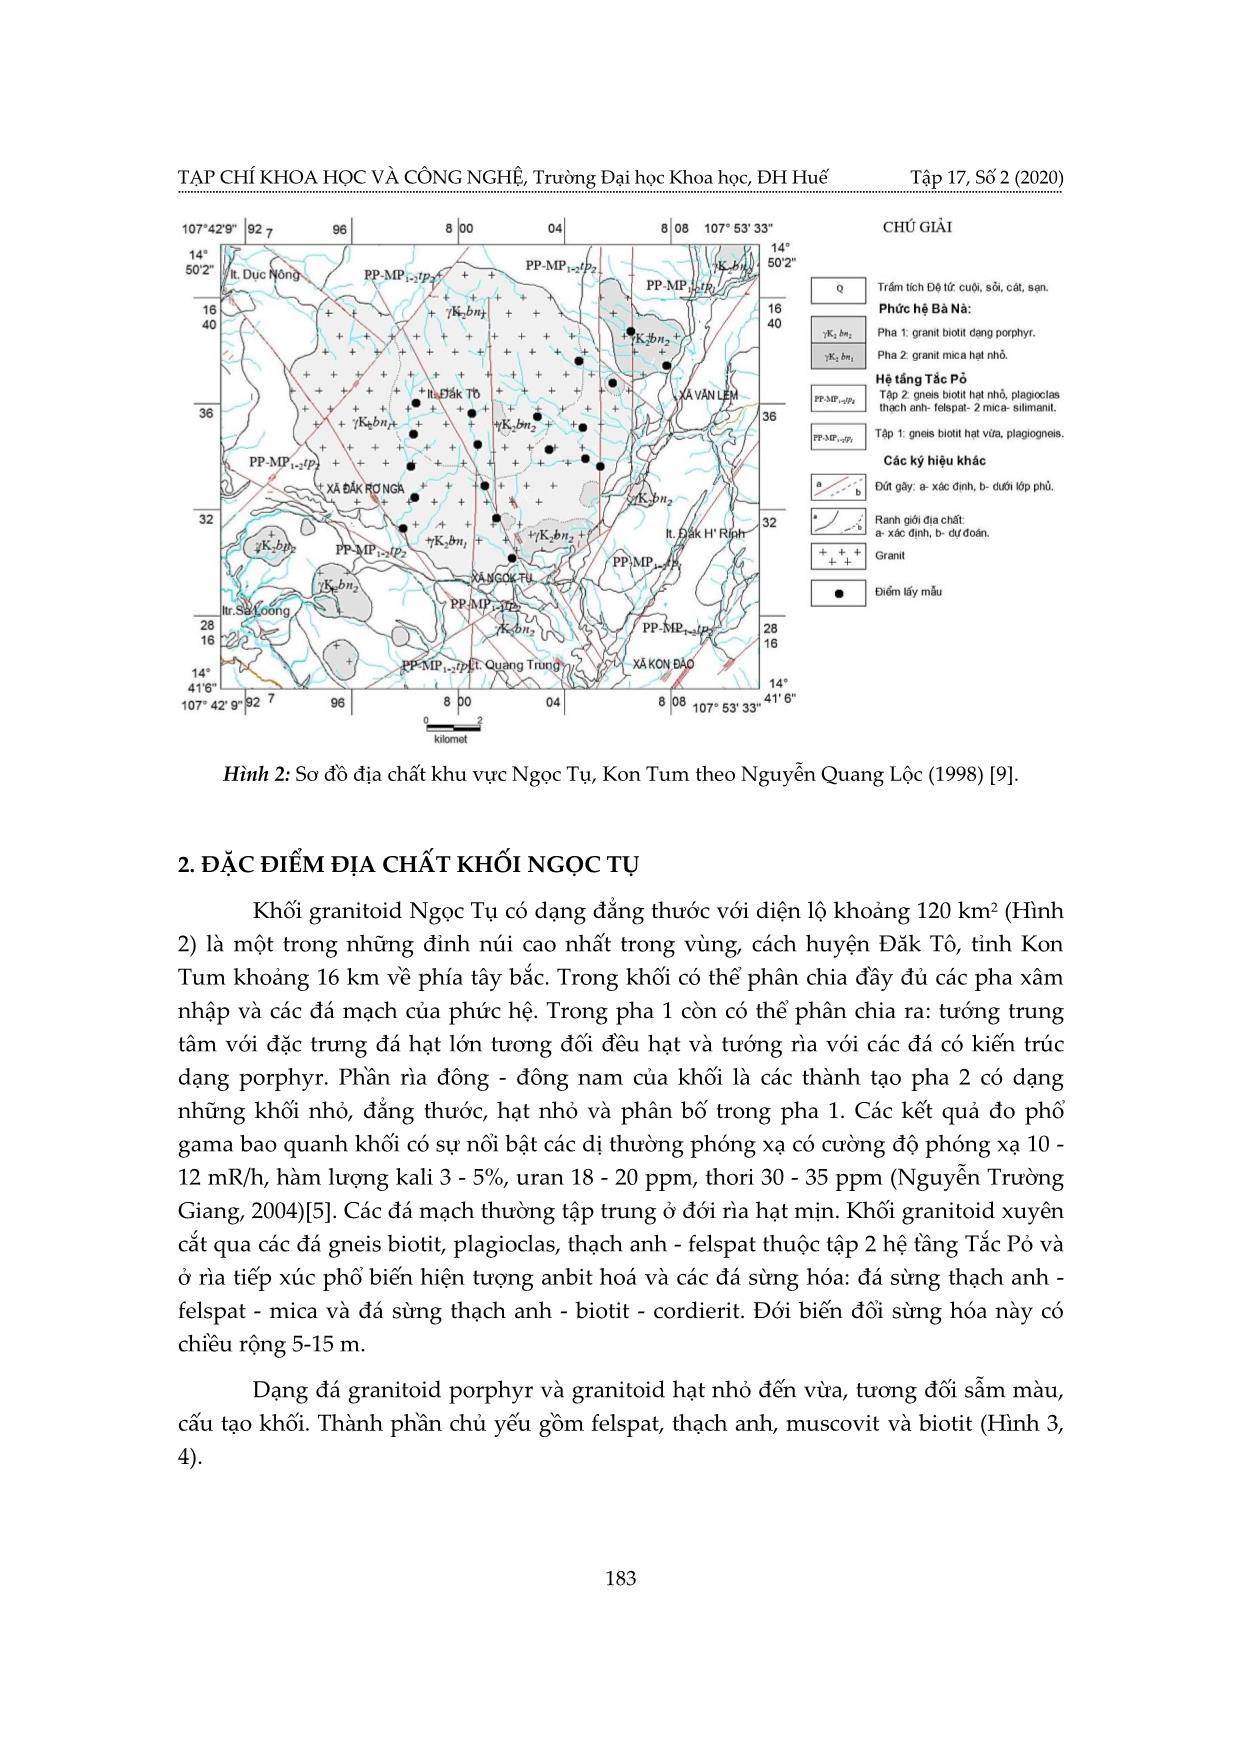 Nghiên cứu tiềm năng sinh khoáng của granitoid khối Ngọc Tụ, Kon Tum trang 3